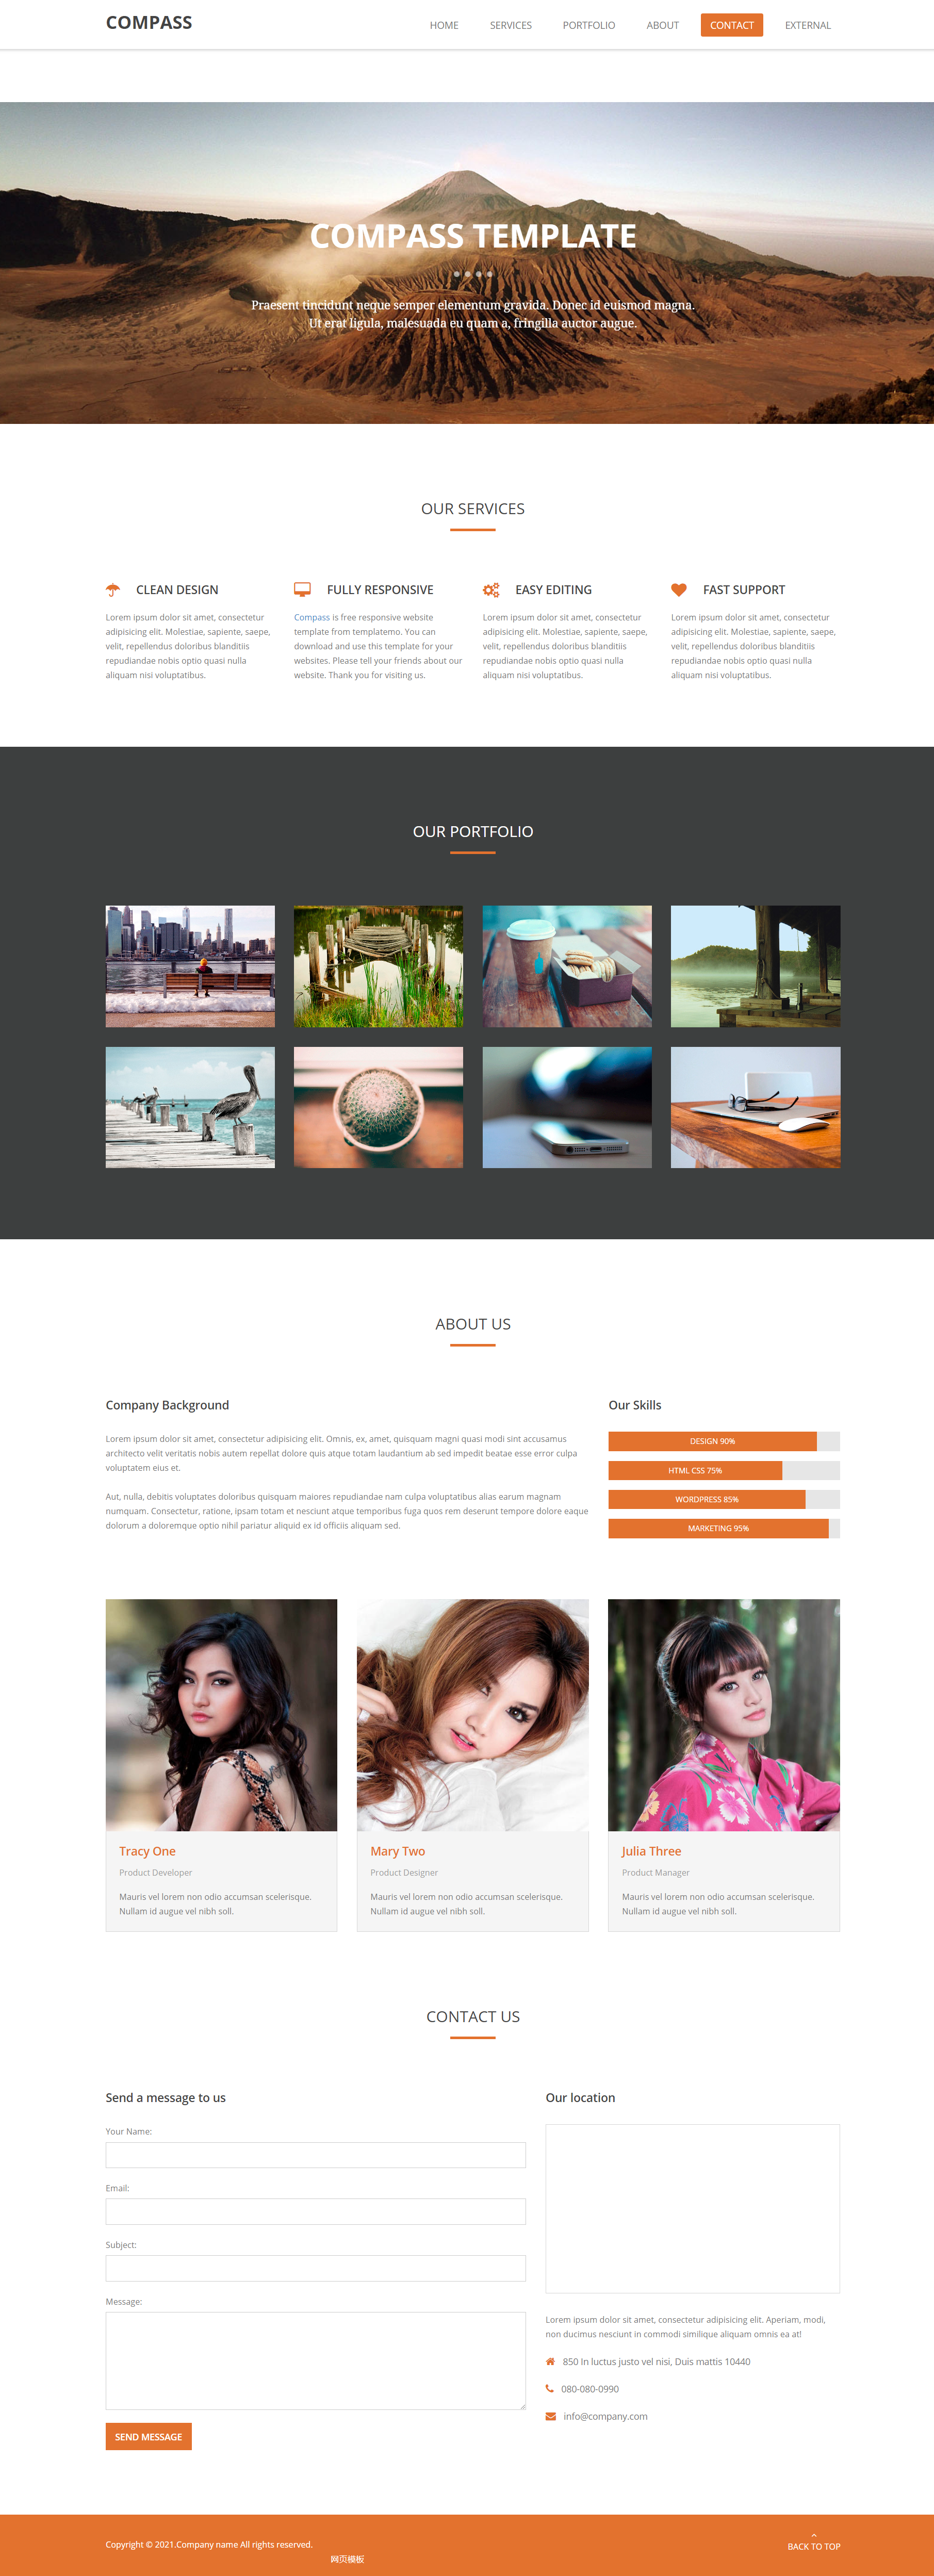 橙色简洁风格响应式大型企业官网企业网站模板